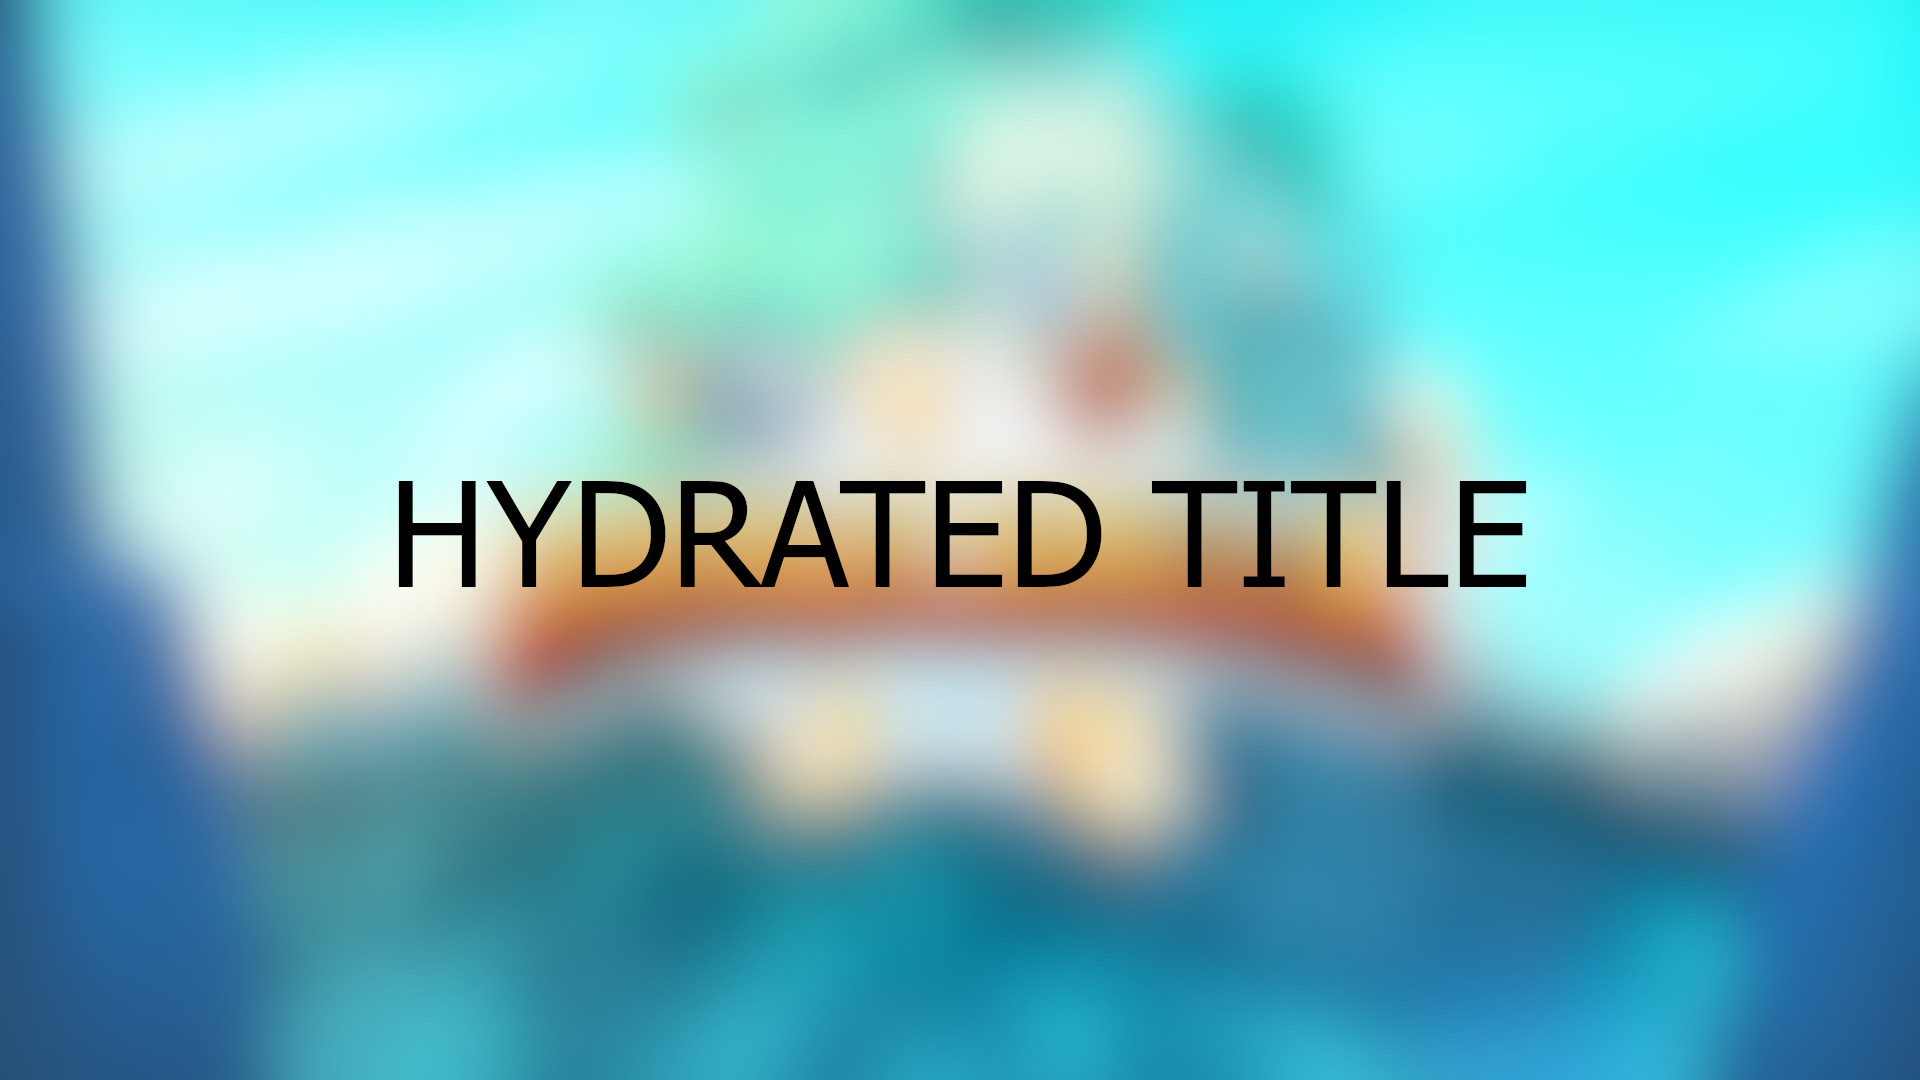 Brawlhalla - Hydrated Title DLC CD Key 0.29 usd